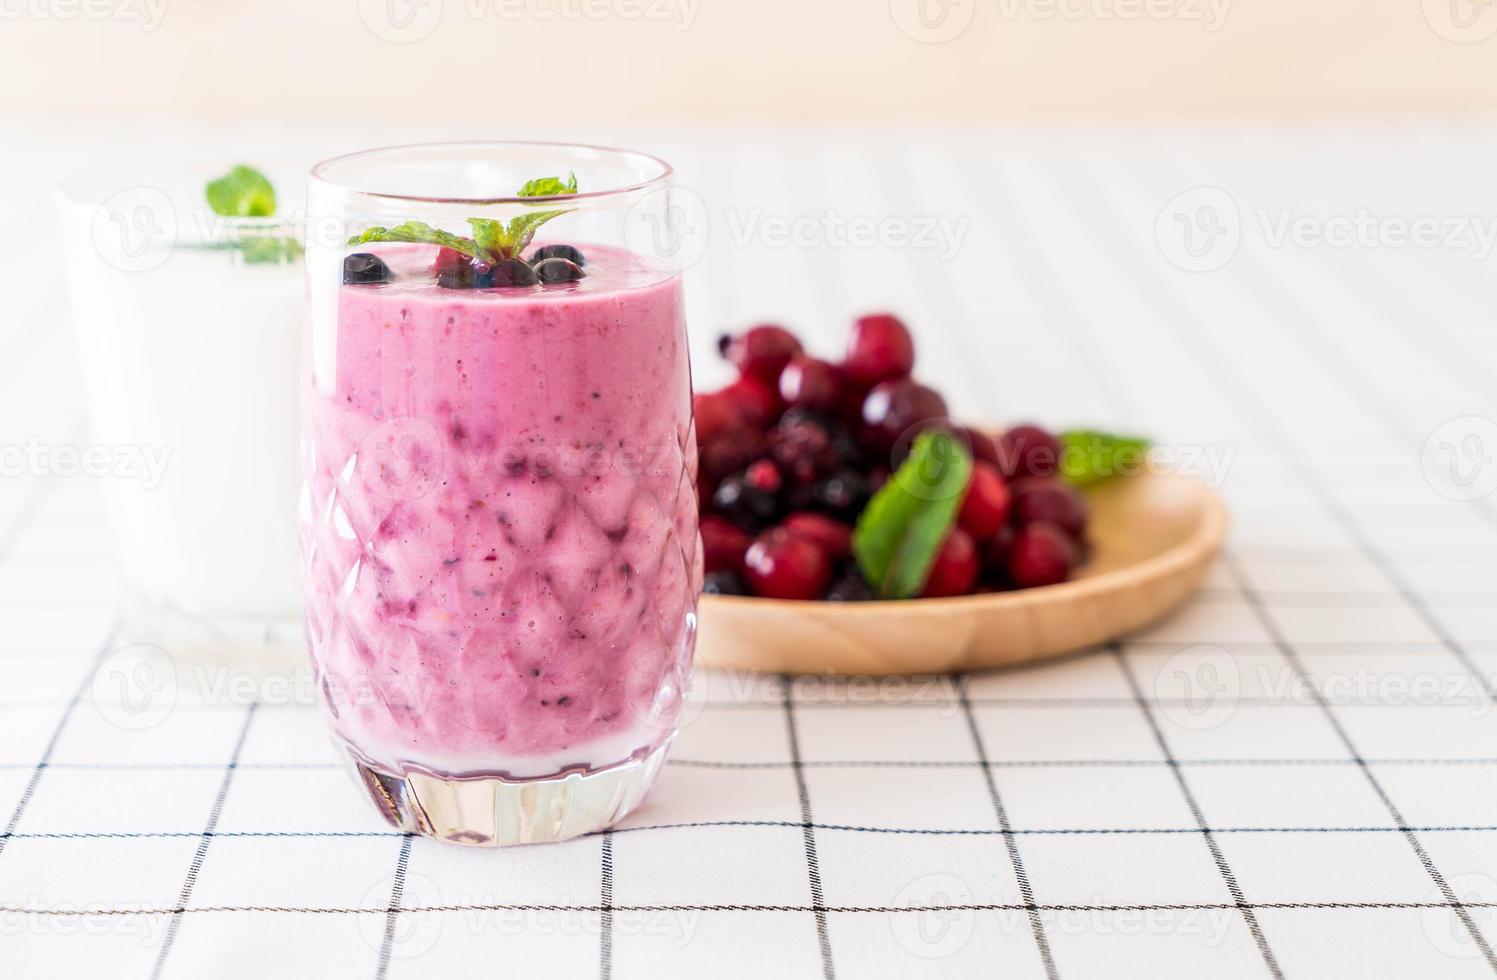 gemischte Beeren mit Joghurt-Smoothies auf dem Tisch foto